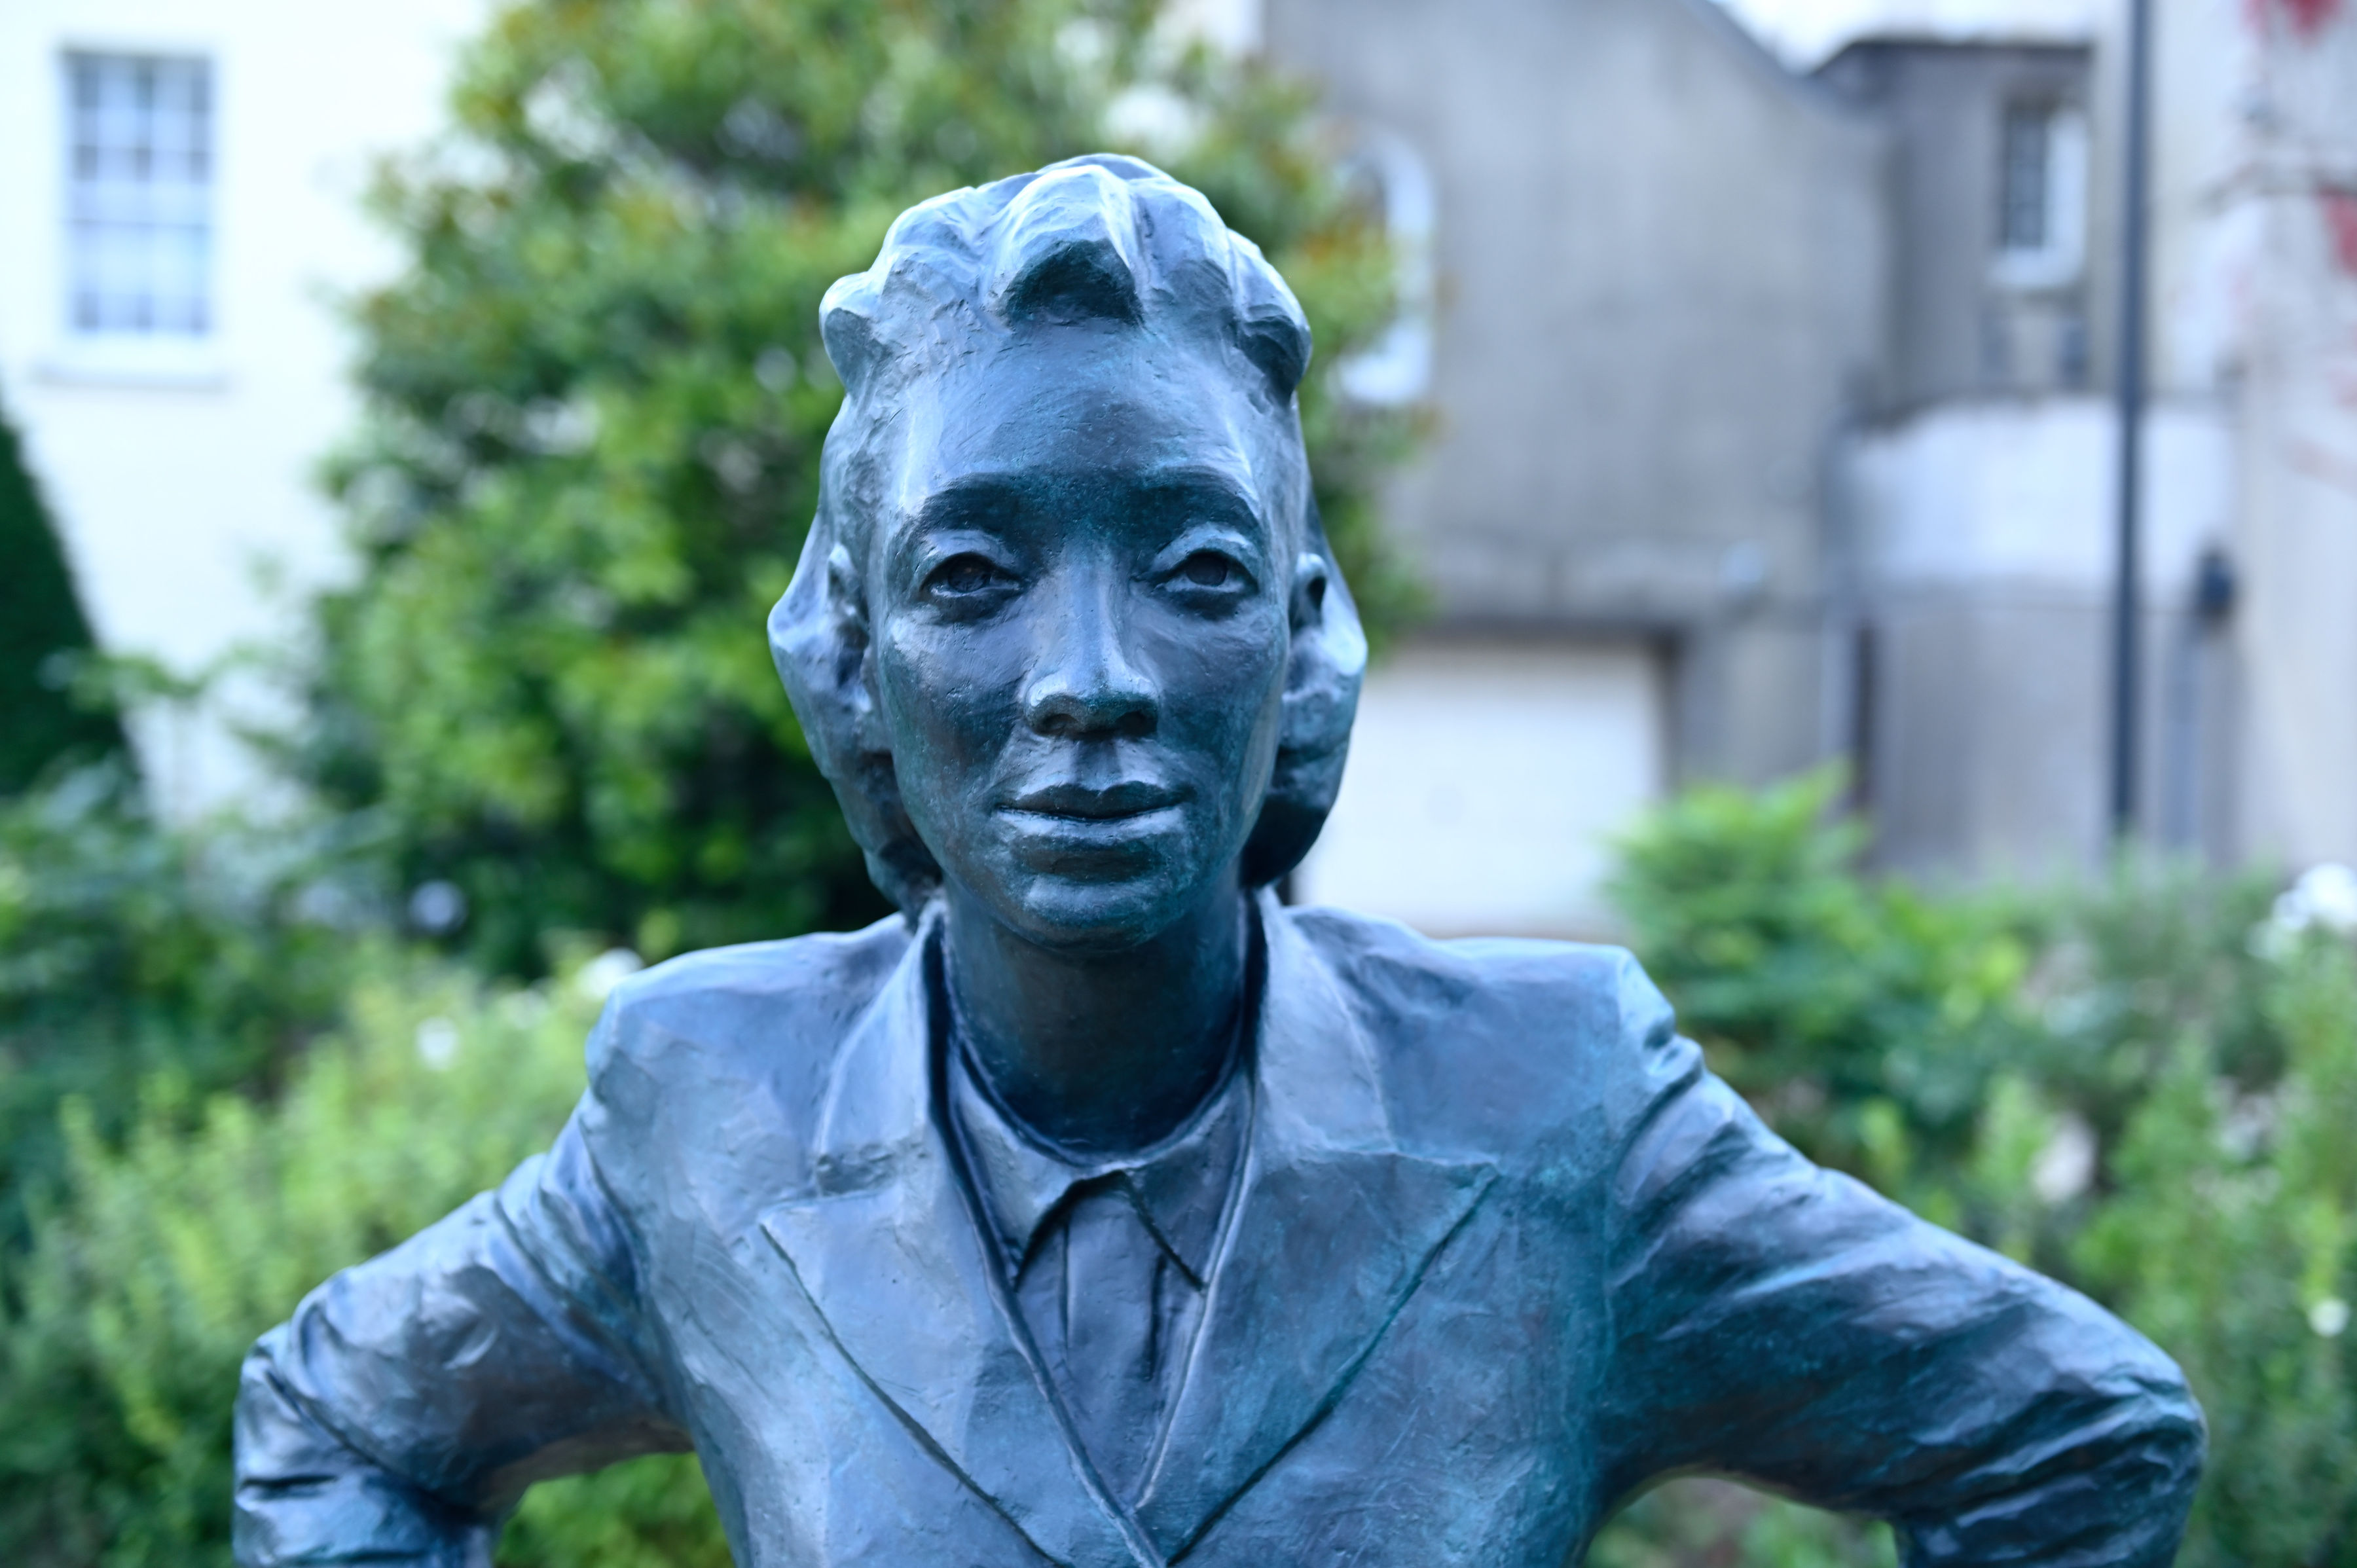 A life-size bronze statue of Henrietta Lacks